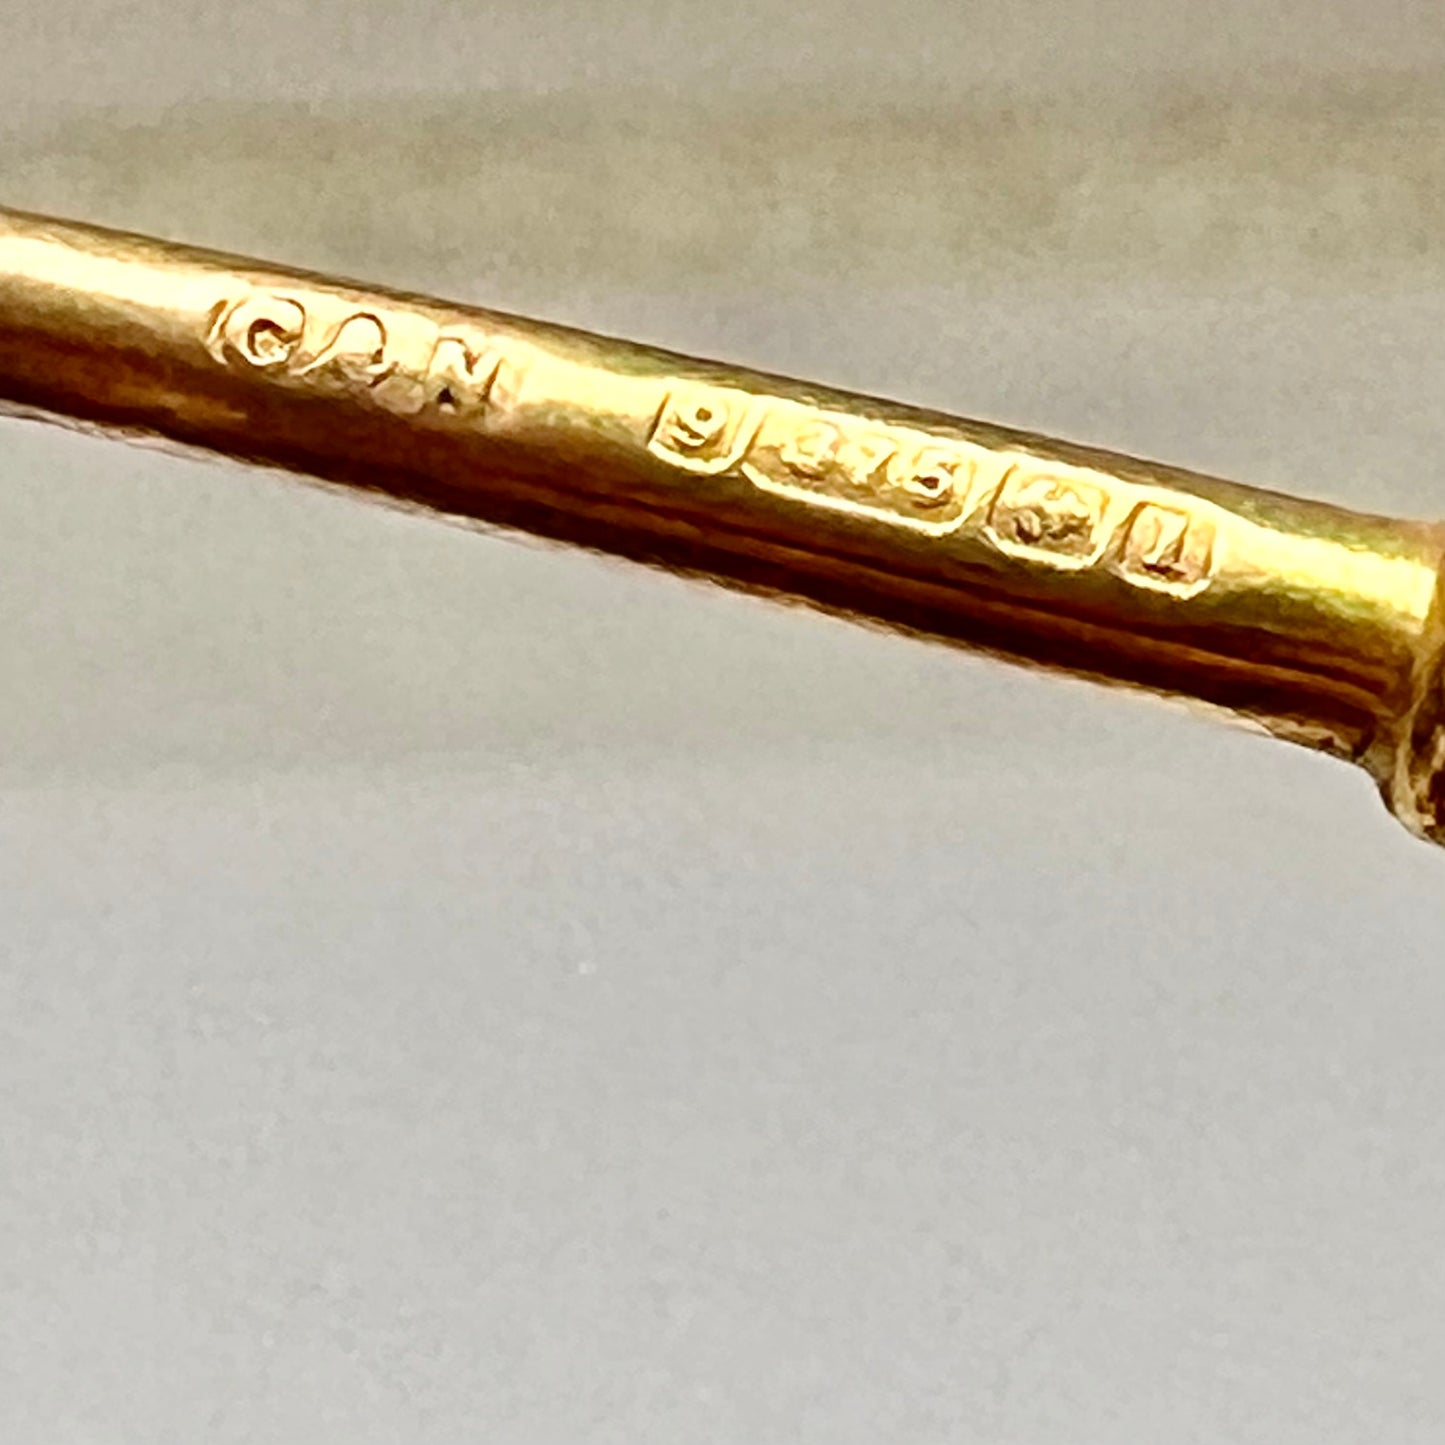 爱德华时代 9ct 金纽扣钩，带有伯明翰 1910、Chrisford 和 Norris 的标记